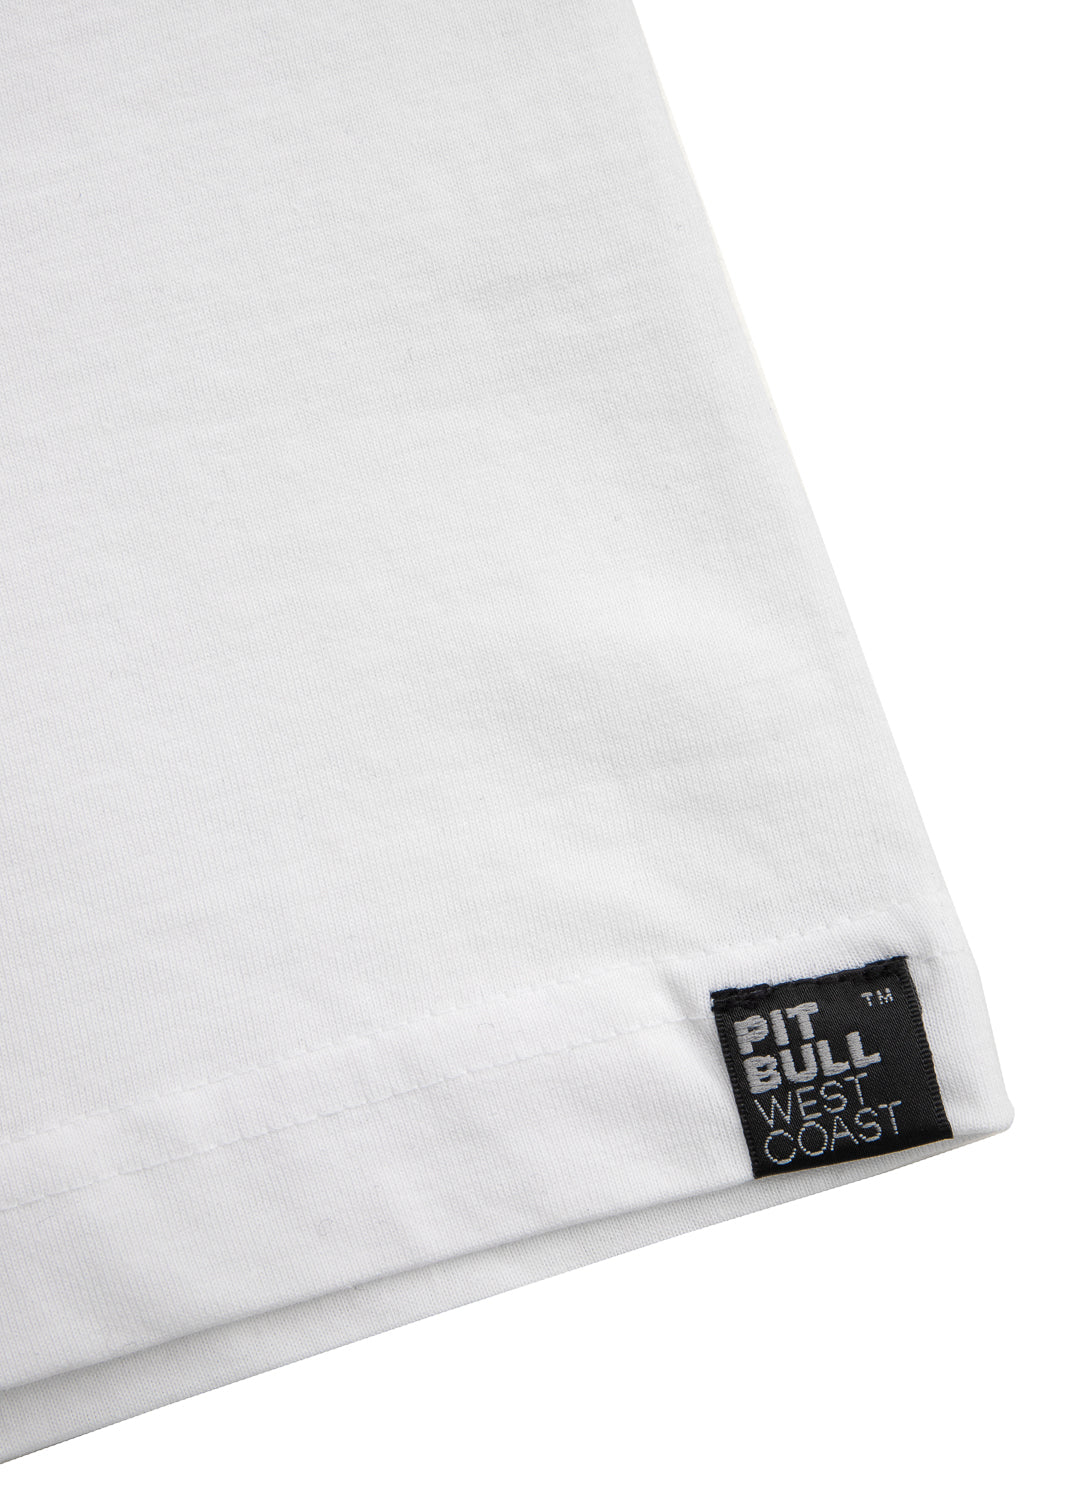 PITBULL USA T-shirt White